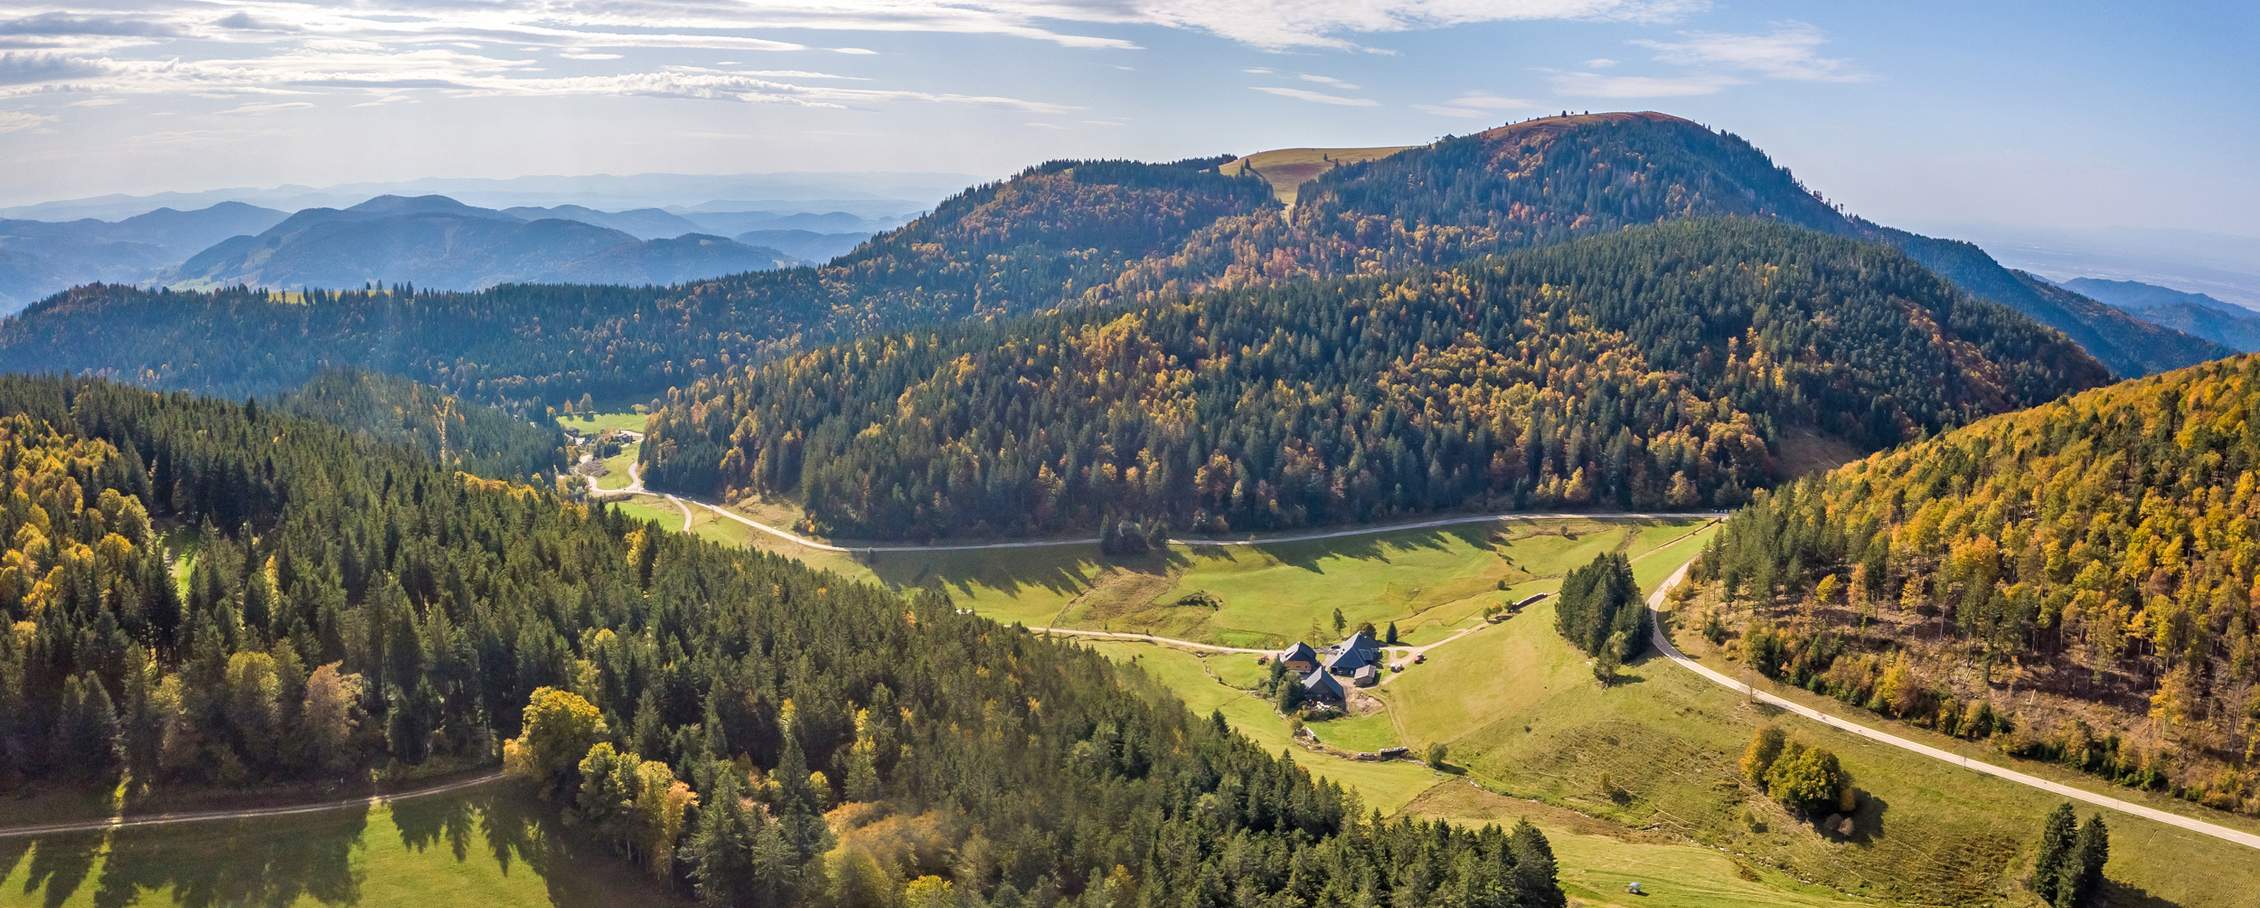 Urlaub in den Bergen – Faszination Schwarzwaldregion Belchen!